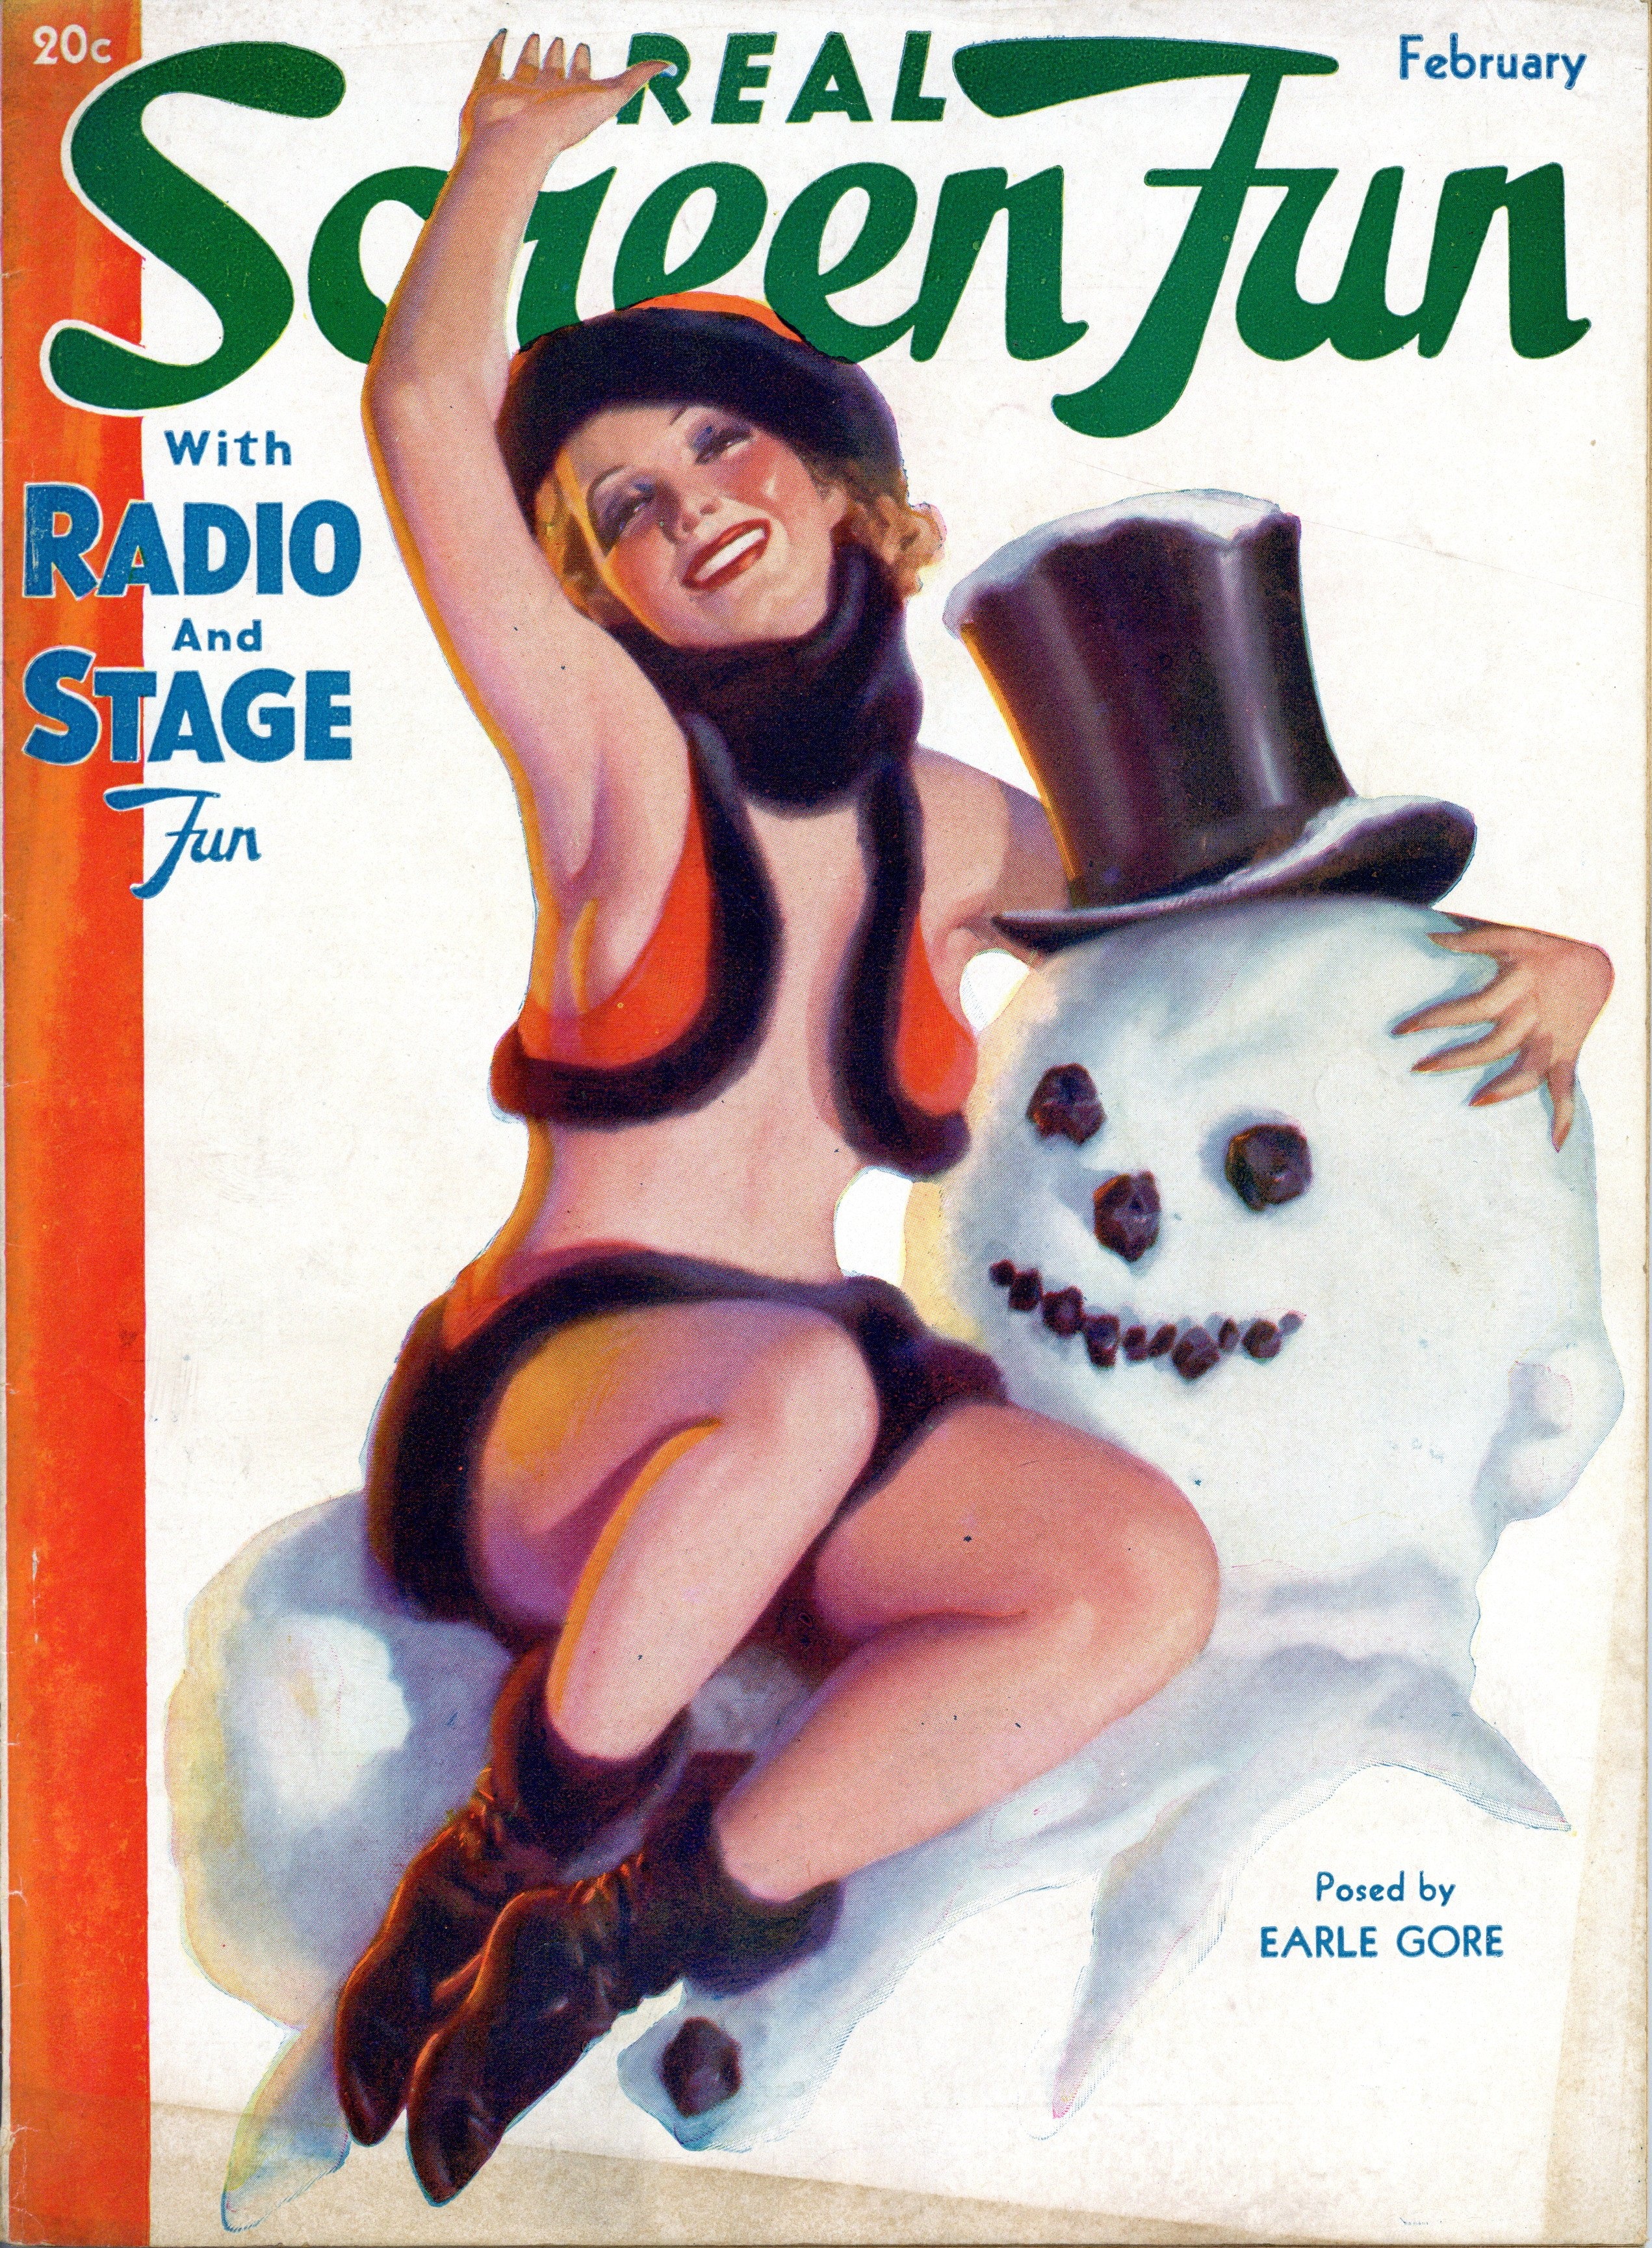 Real Screen Fun, February 1936